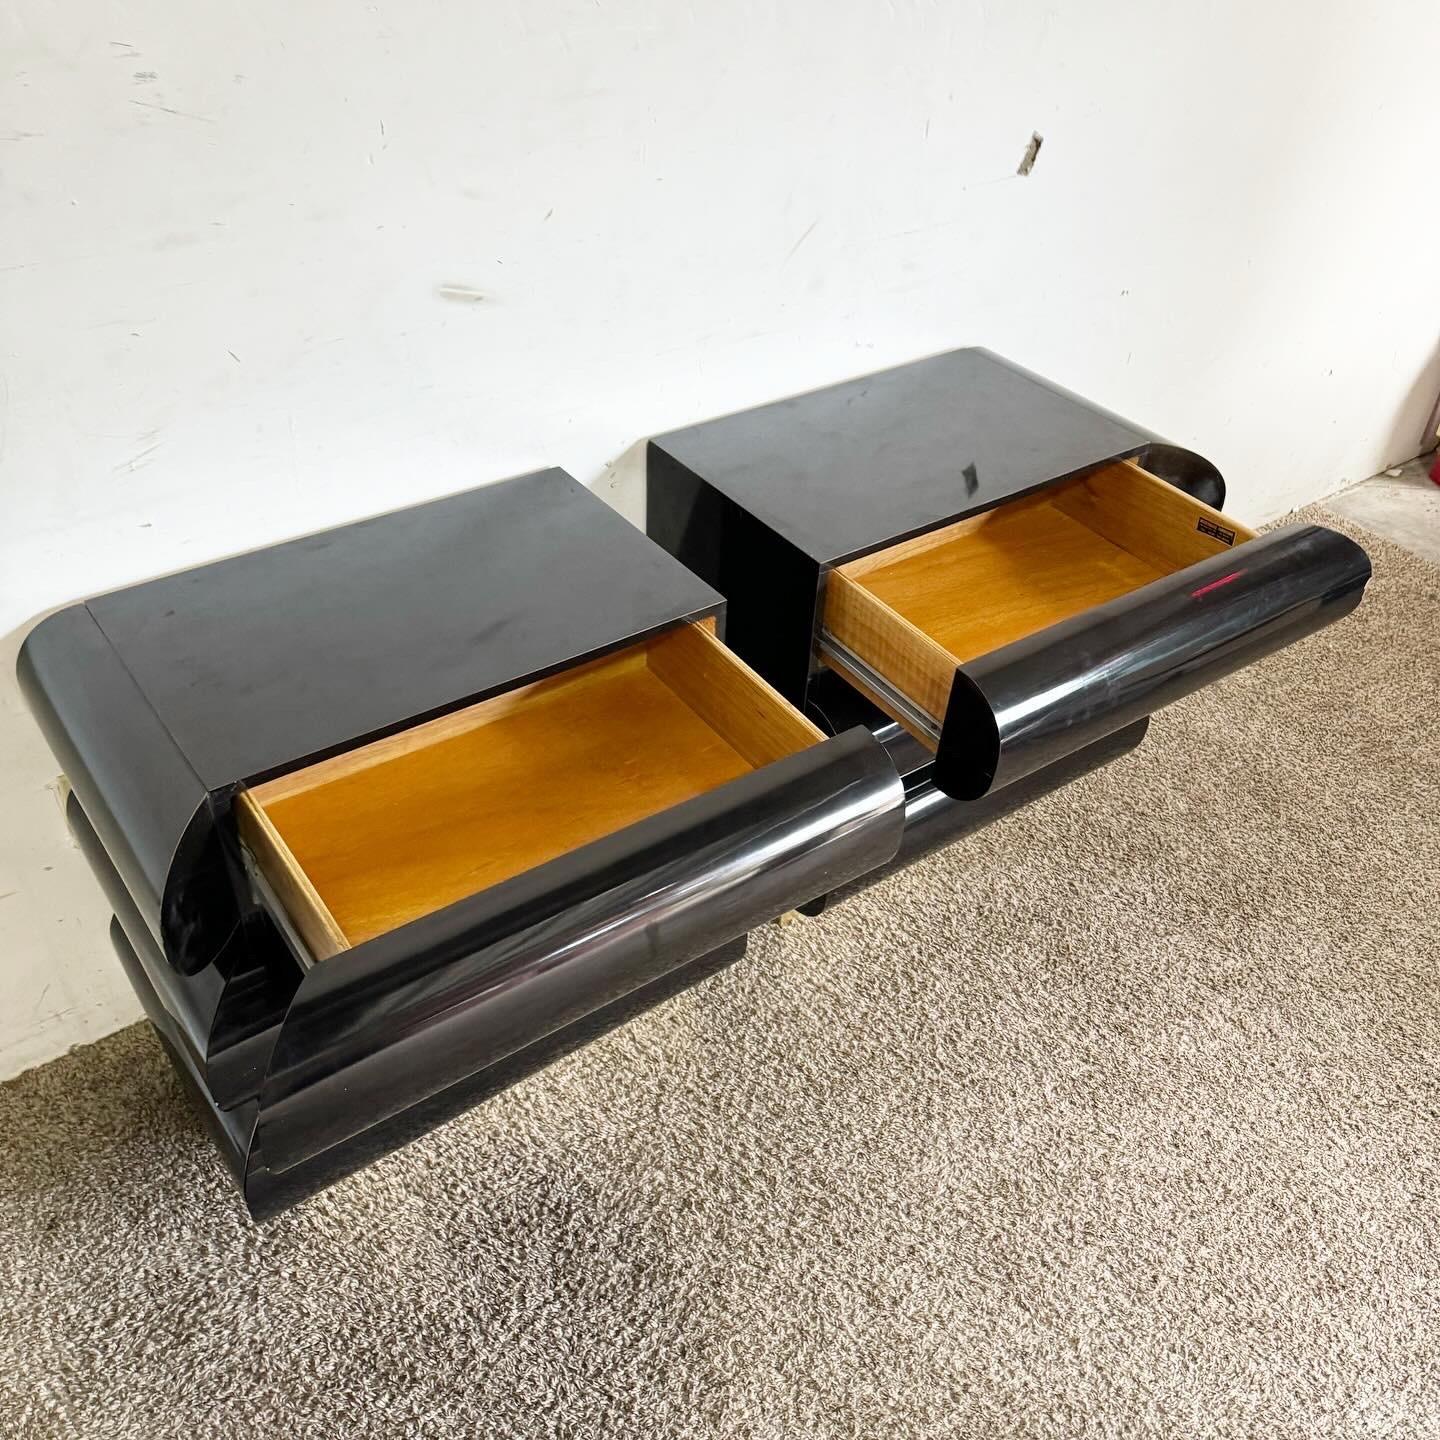 Introduisez un luxe moderne dans votre chambre à coucher avec ces tables de chevet postmodernes en stratifié laqué noir sur bases dorées. Cette paire présente un design épuré avec des bords arrondis lisses et une riche finition noire, contrastée par